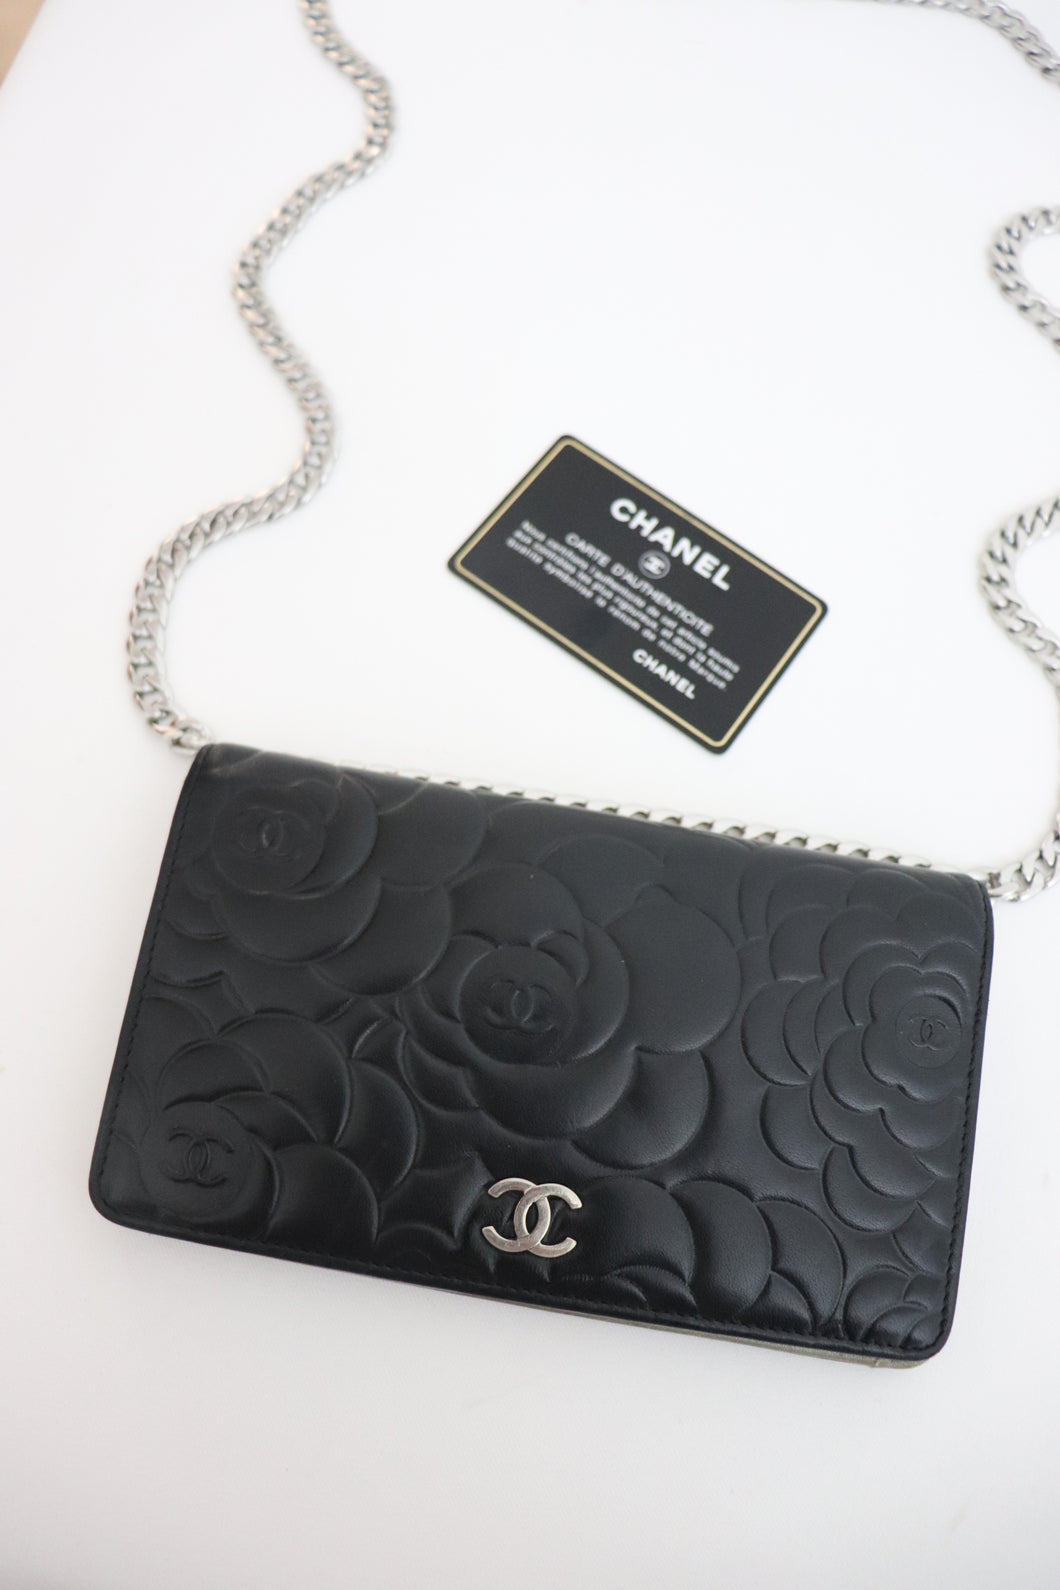 Chanel embossed camellia vintage wallet